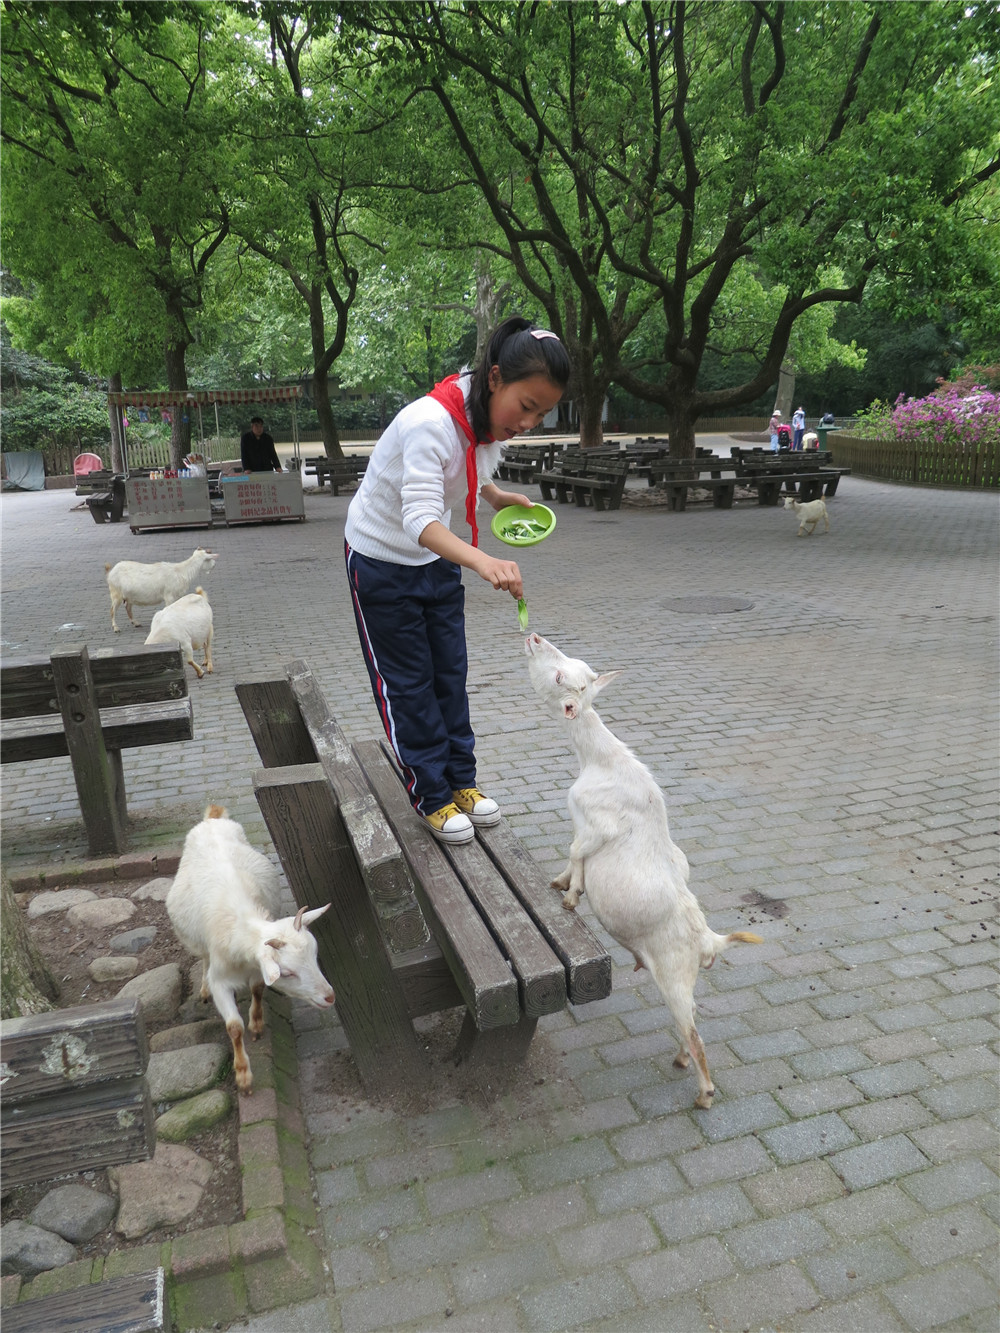 Дата снимка:                       24.04.2014Место снимка:                    ШанхайИстория снимка:               В зоопарке ребята кормят козлят